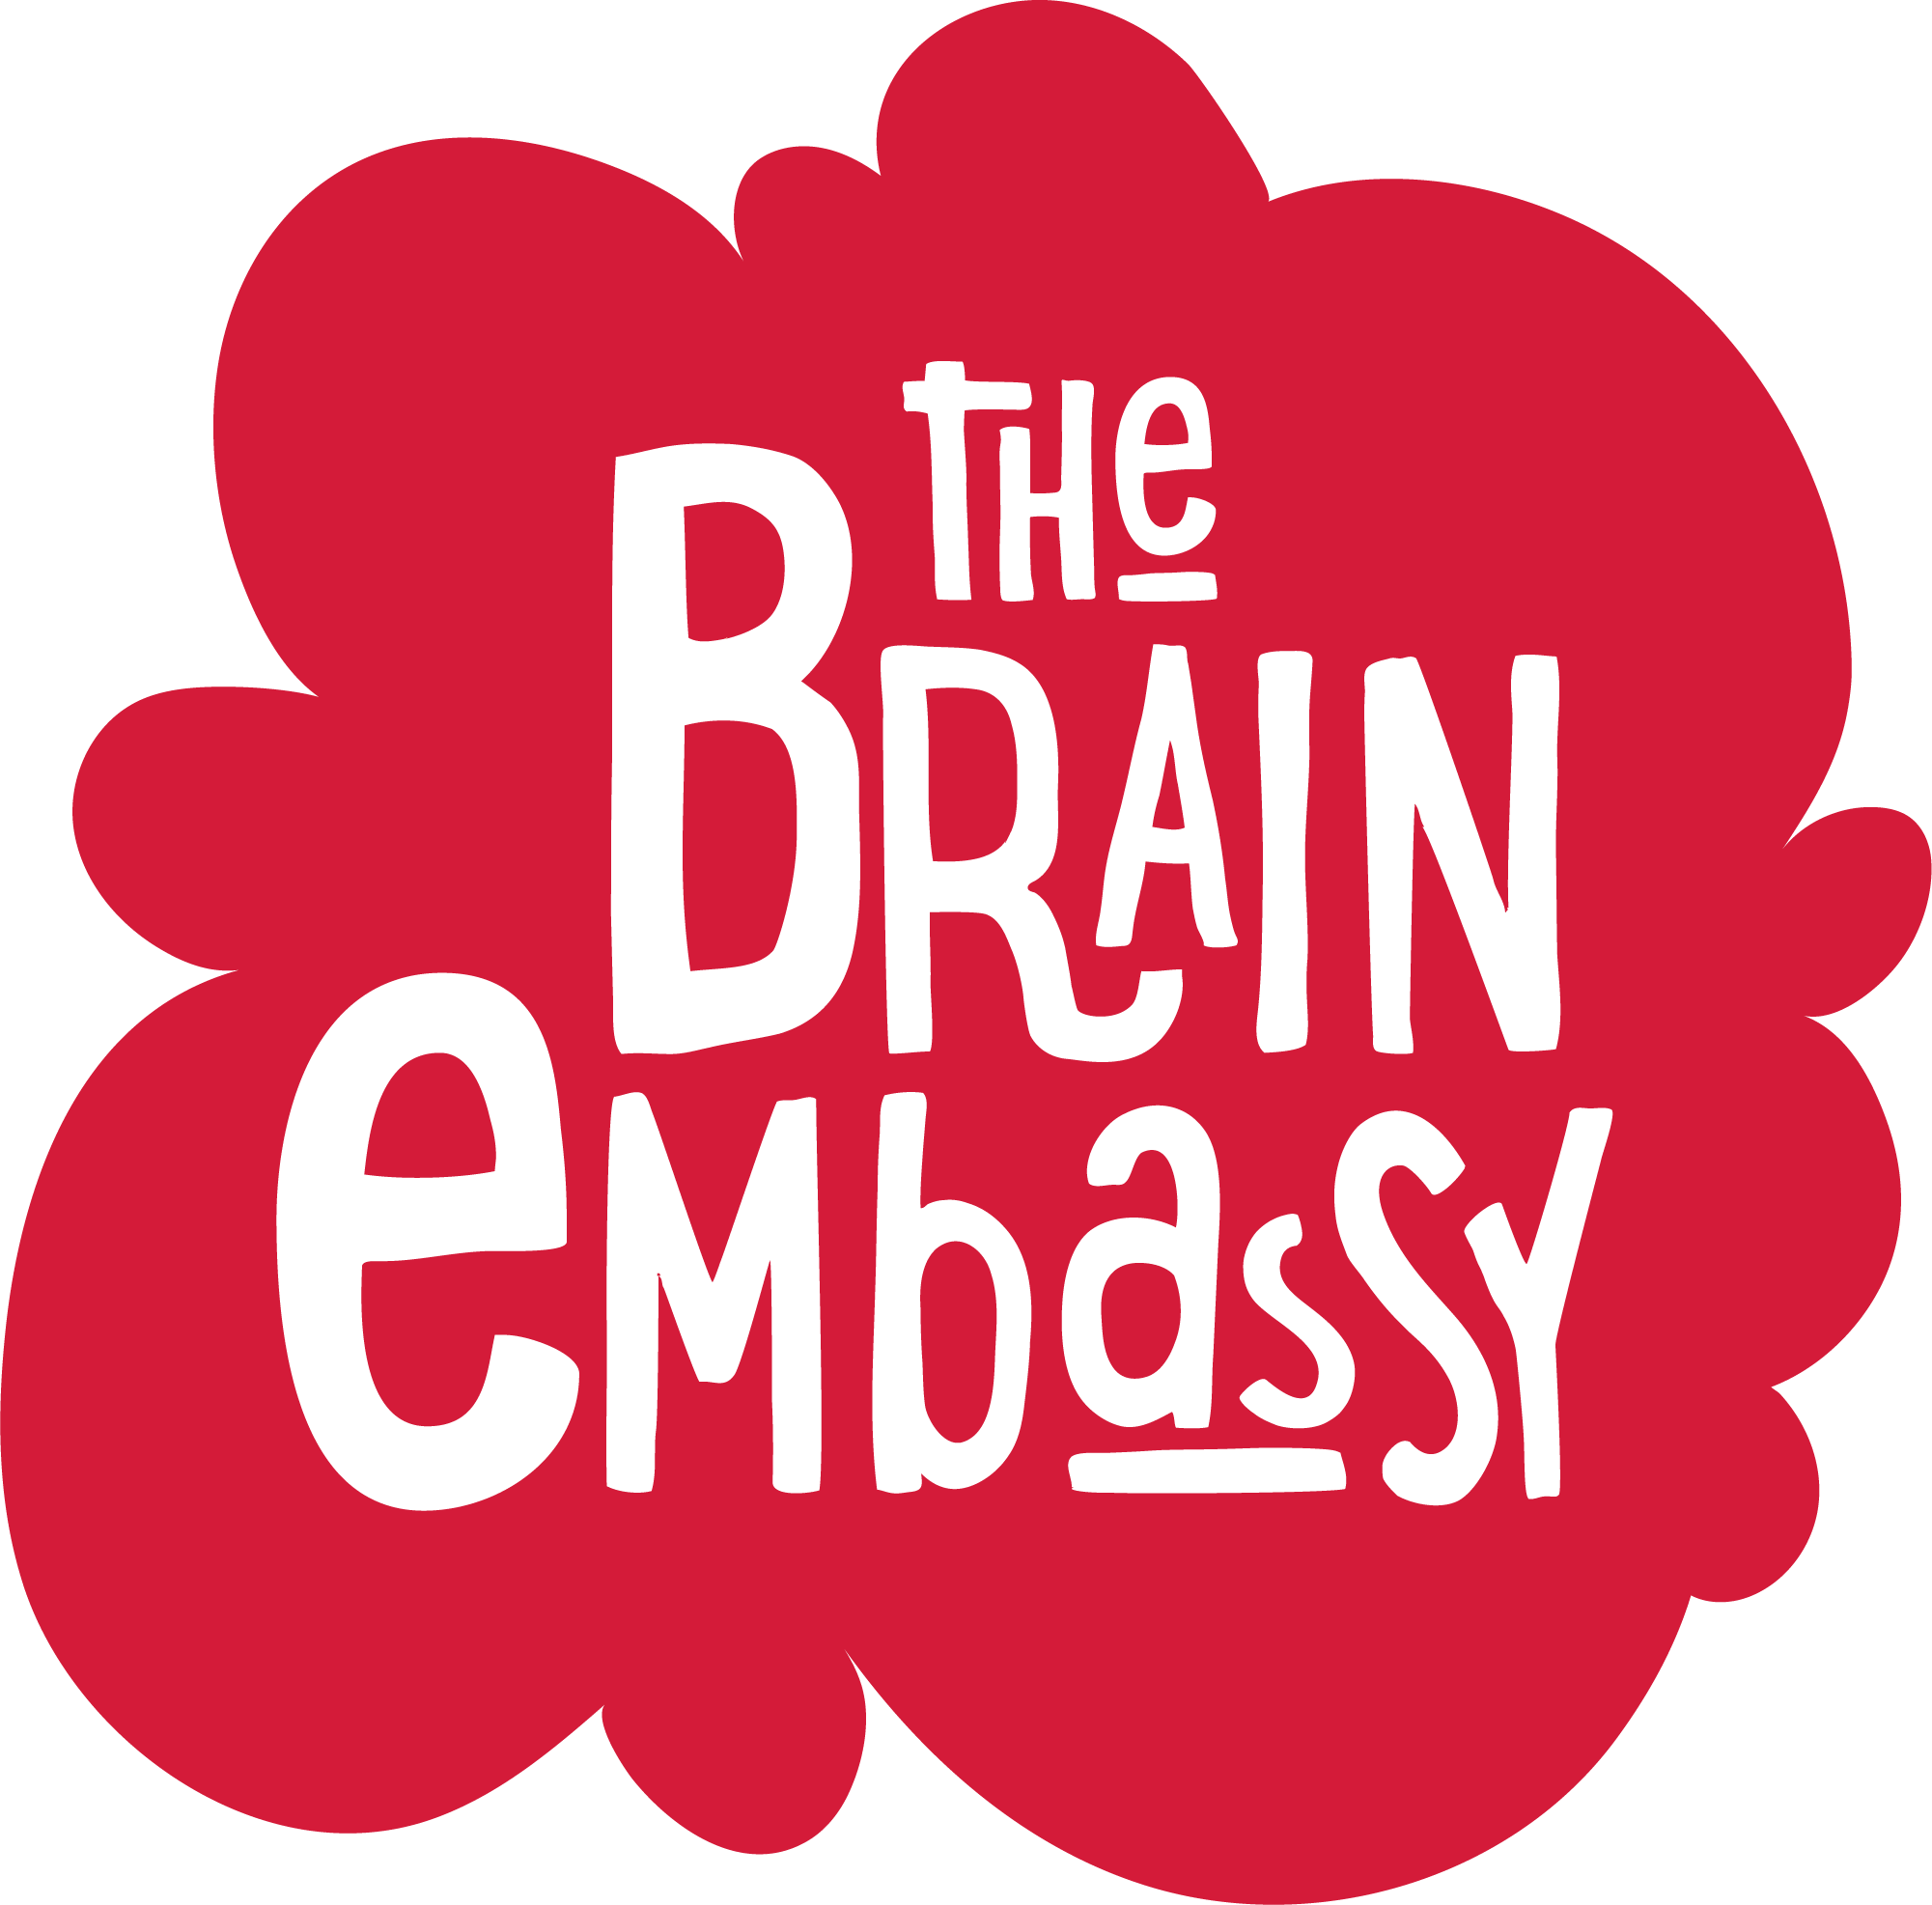 Www - Brainembassy - Com - Brain Embassy Logo (2001x1973)